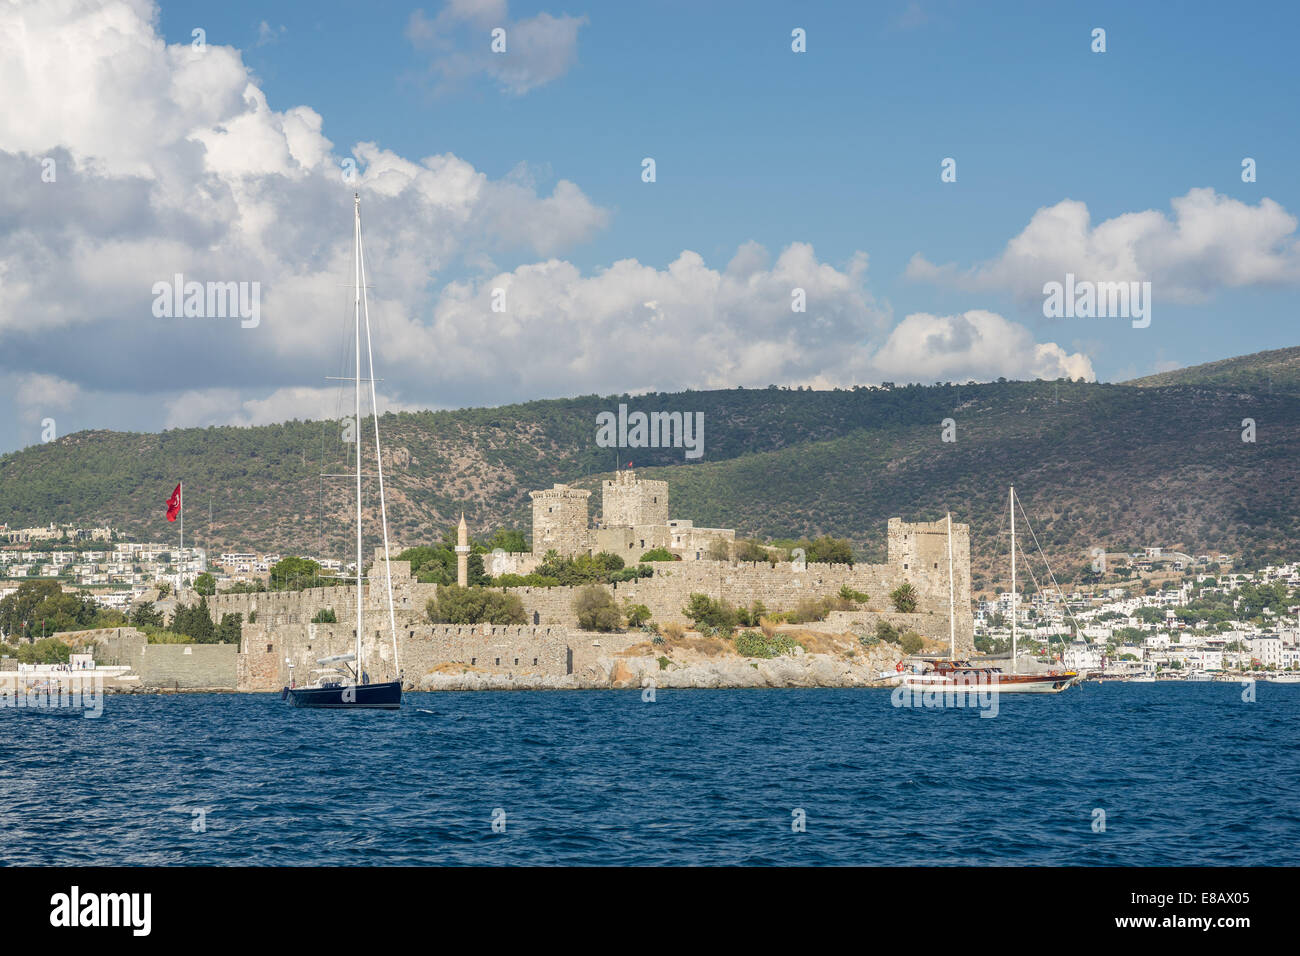 Saint Peter's Castle Bodrum port Turkey Stock Photo